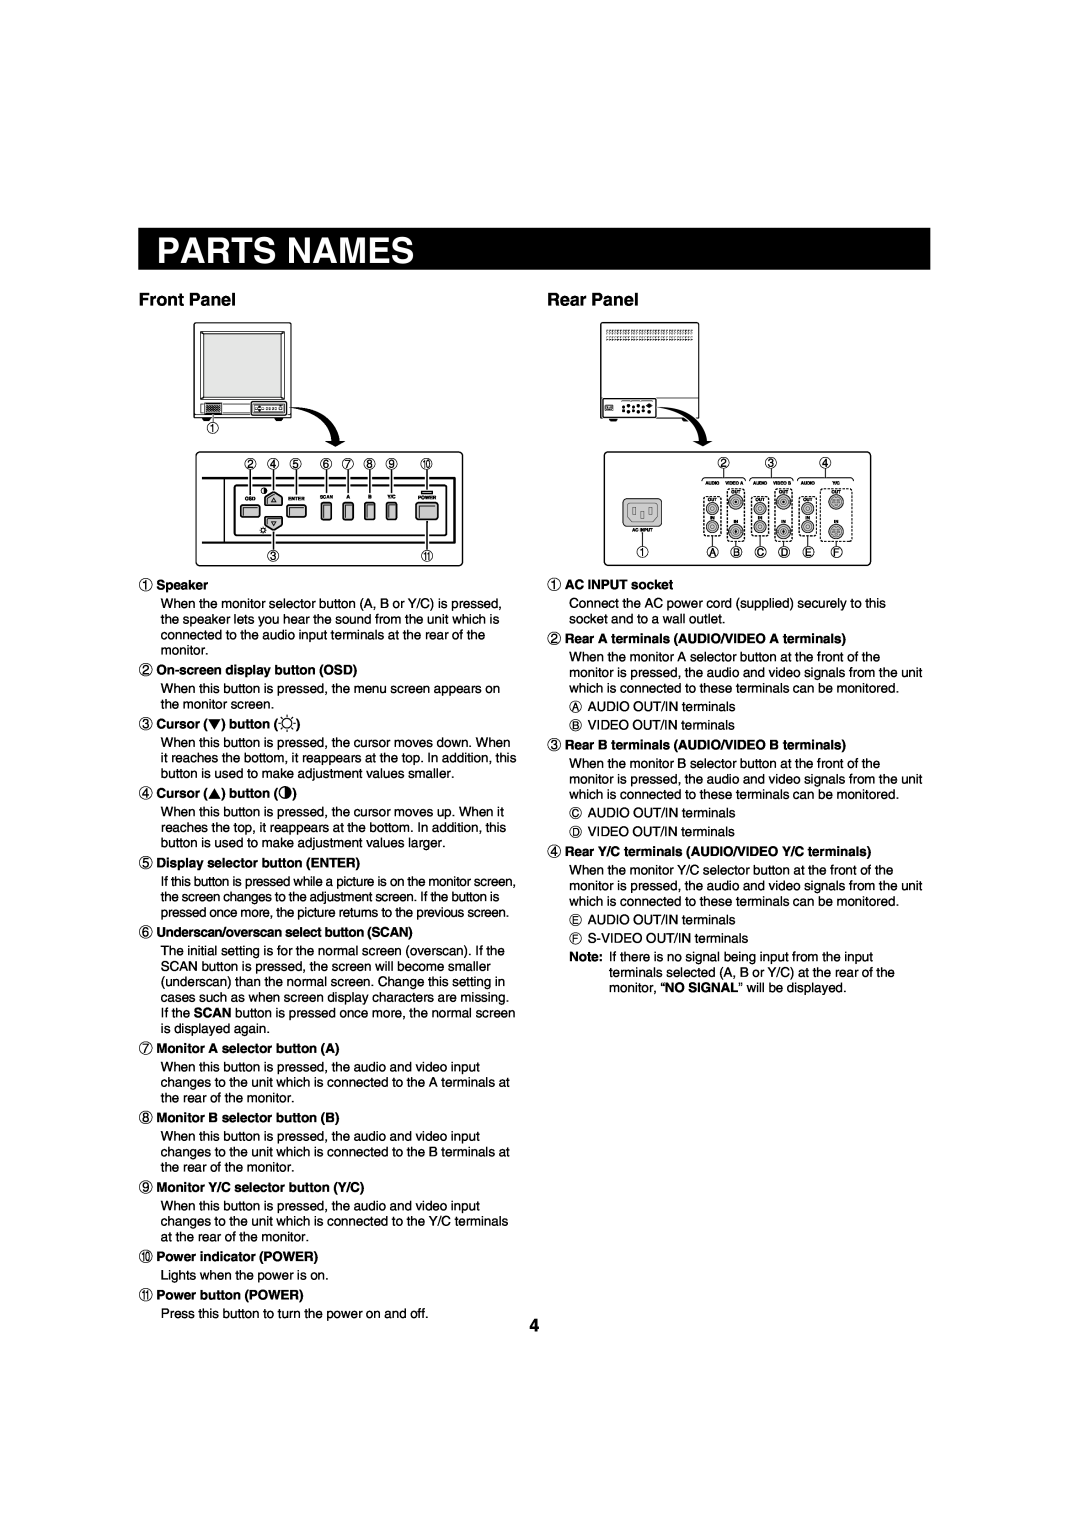 Sanyo VMC-8620 instruction manual Parts Names, Front Panel, Rear Panel 